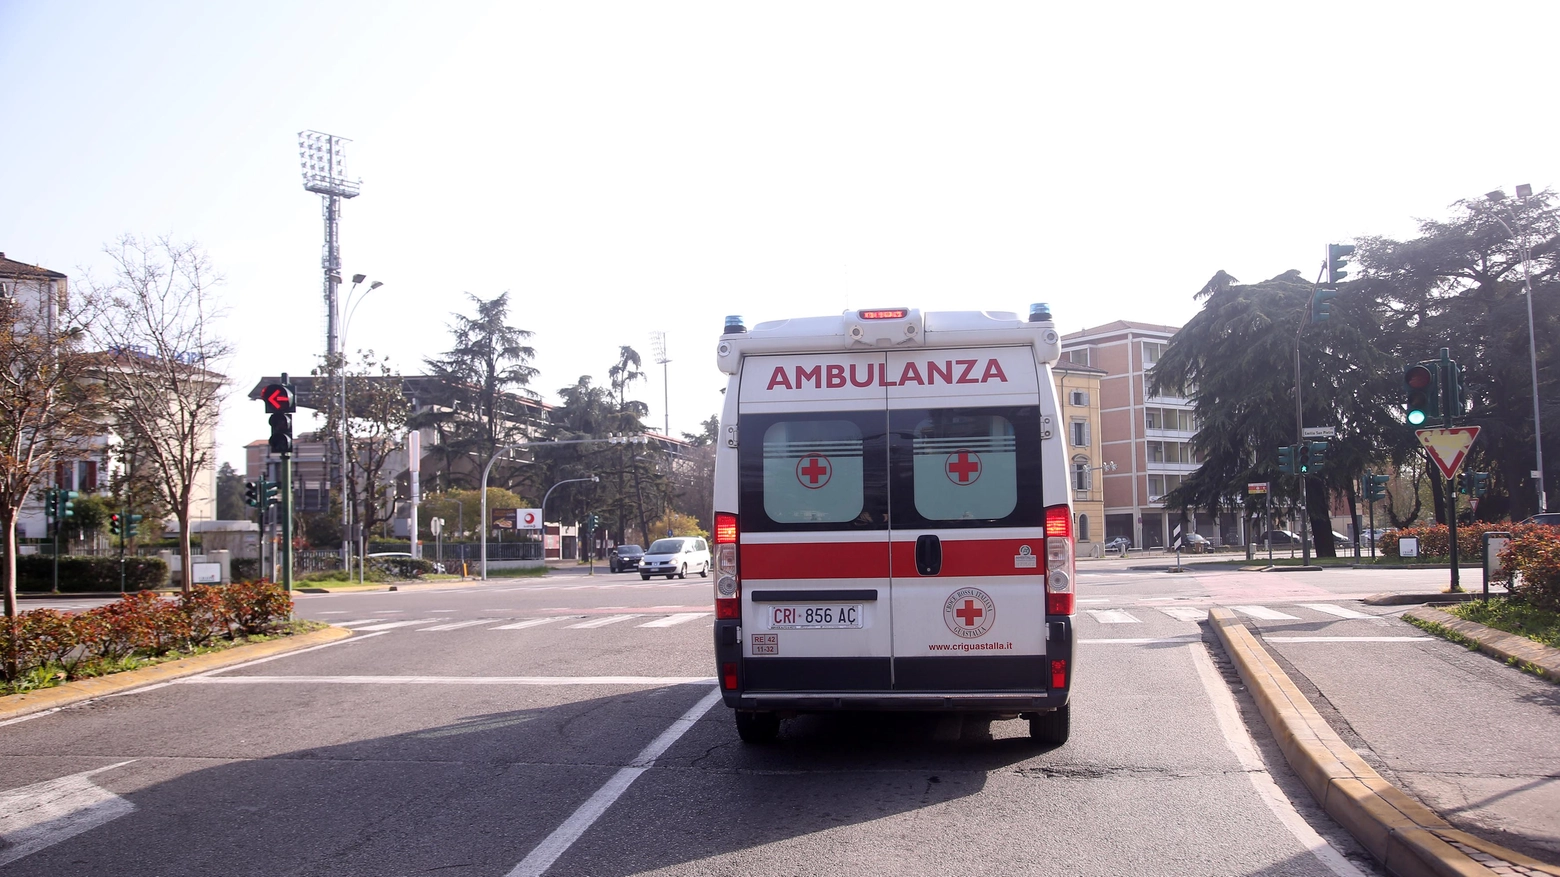 Ambulanza (immagini di repetorio)